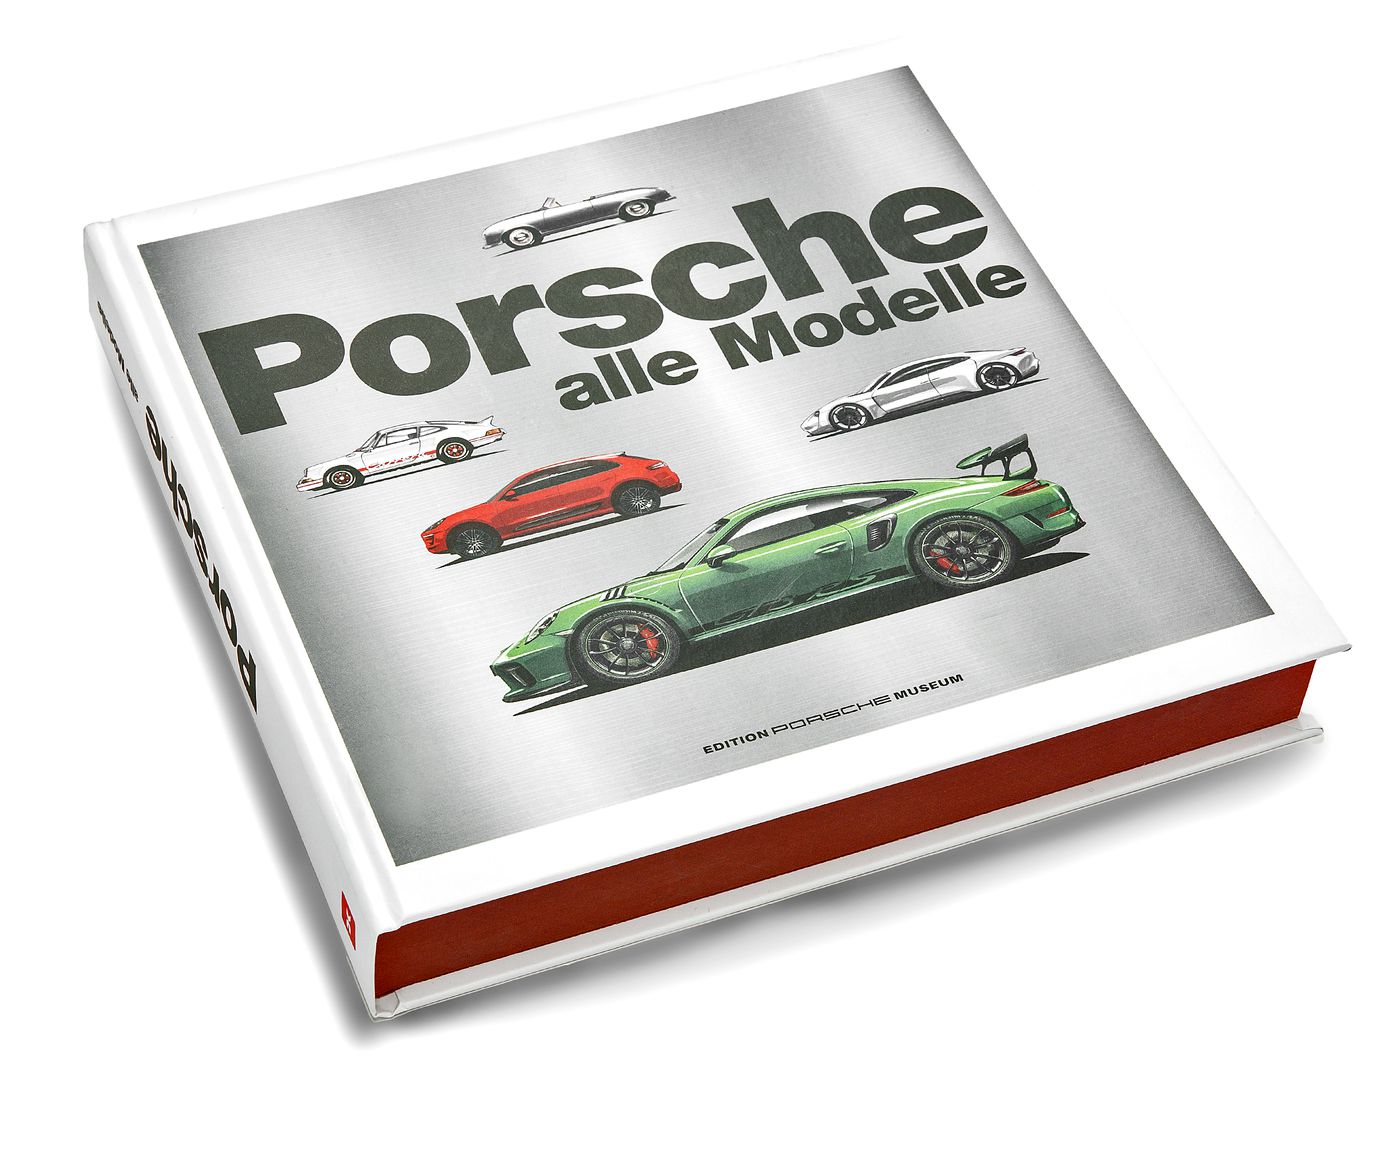 Porsche
Porsche
Porsche
Porsche